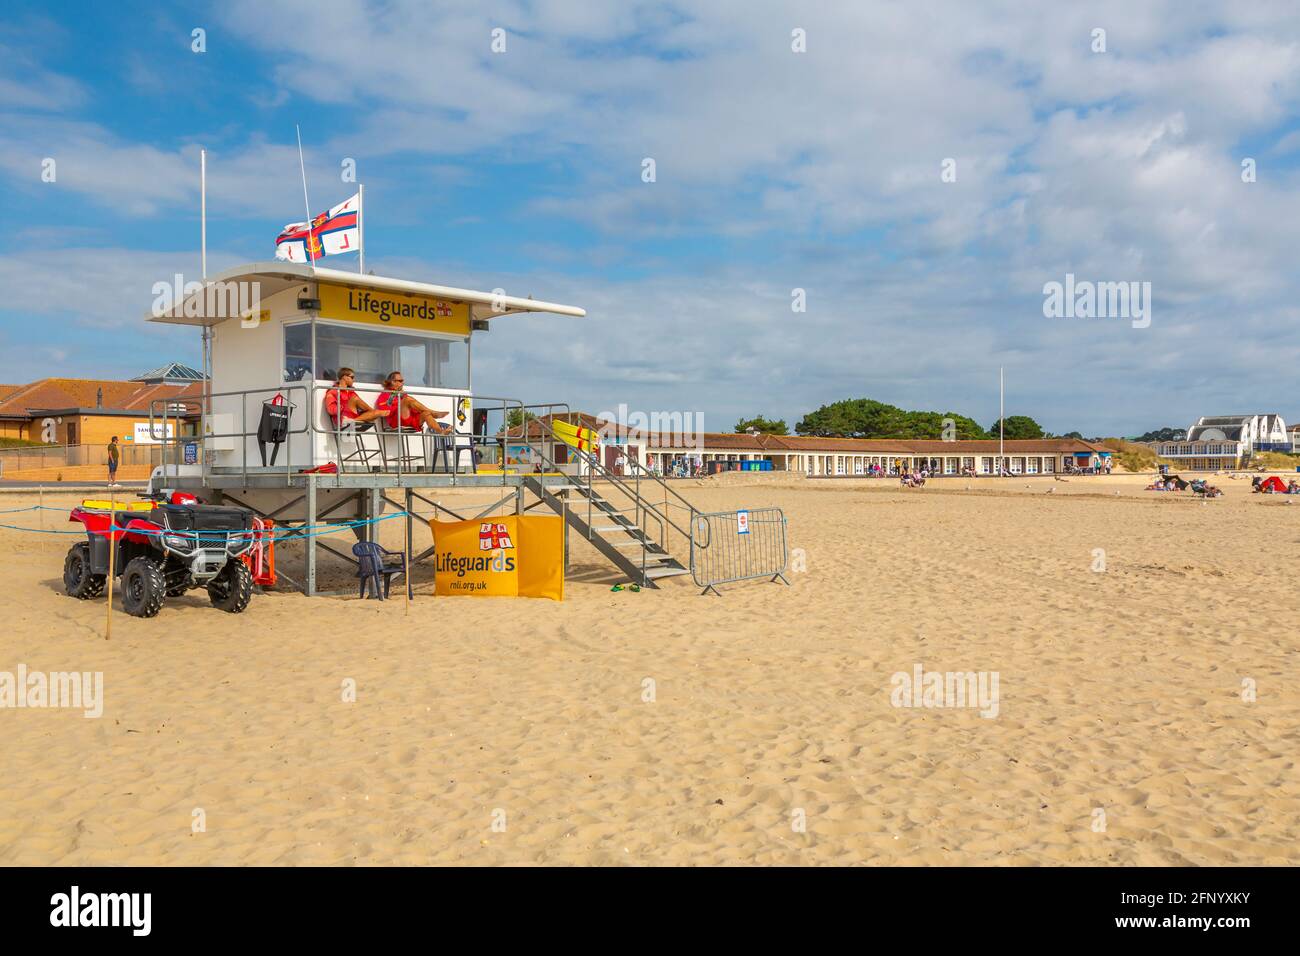 Vue de la tour de surveillance des sauveteurs sur Sandbanks Beach à Poole Bay, Poole, Dorset, Angleterre, Royaume-Uni,Europe Banque D'Images